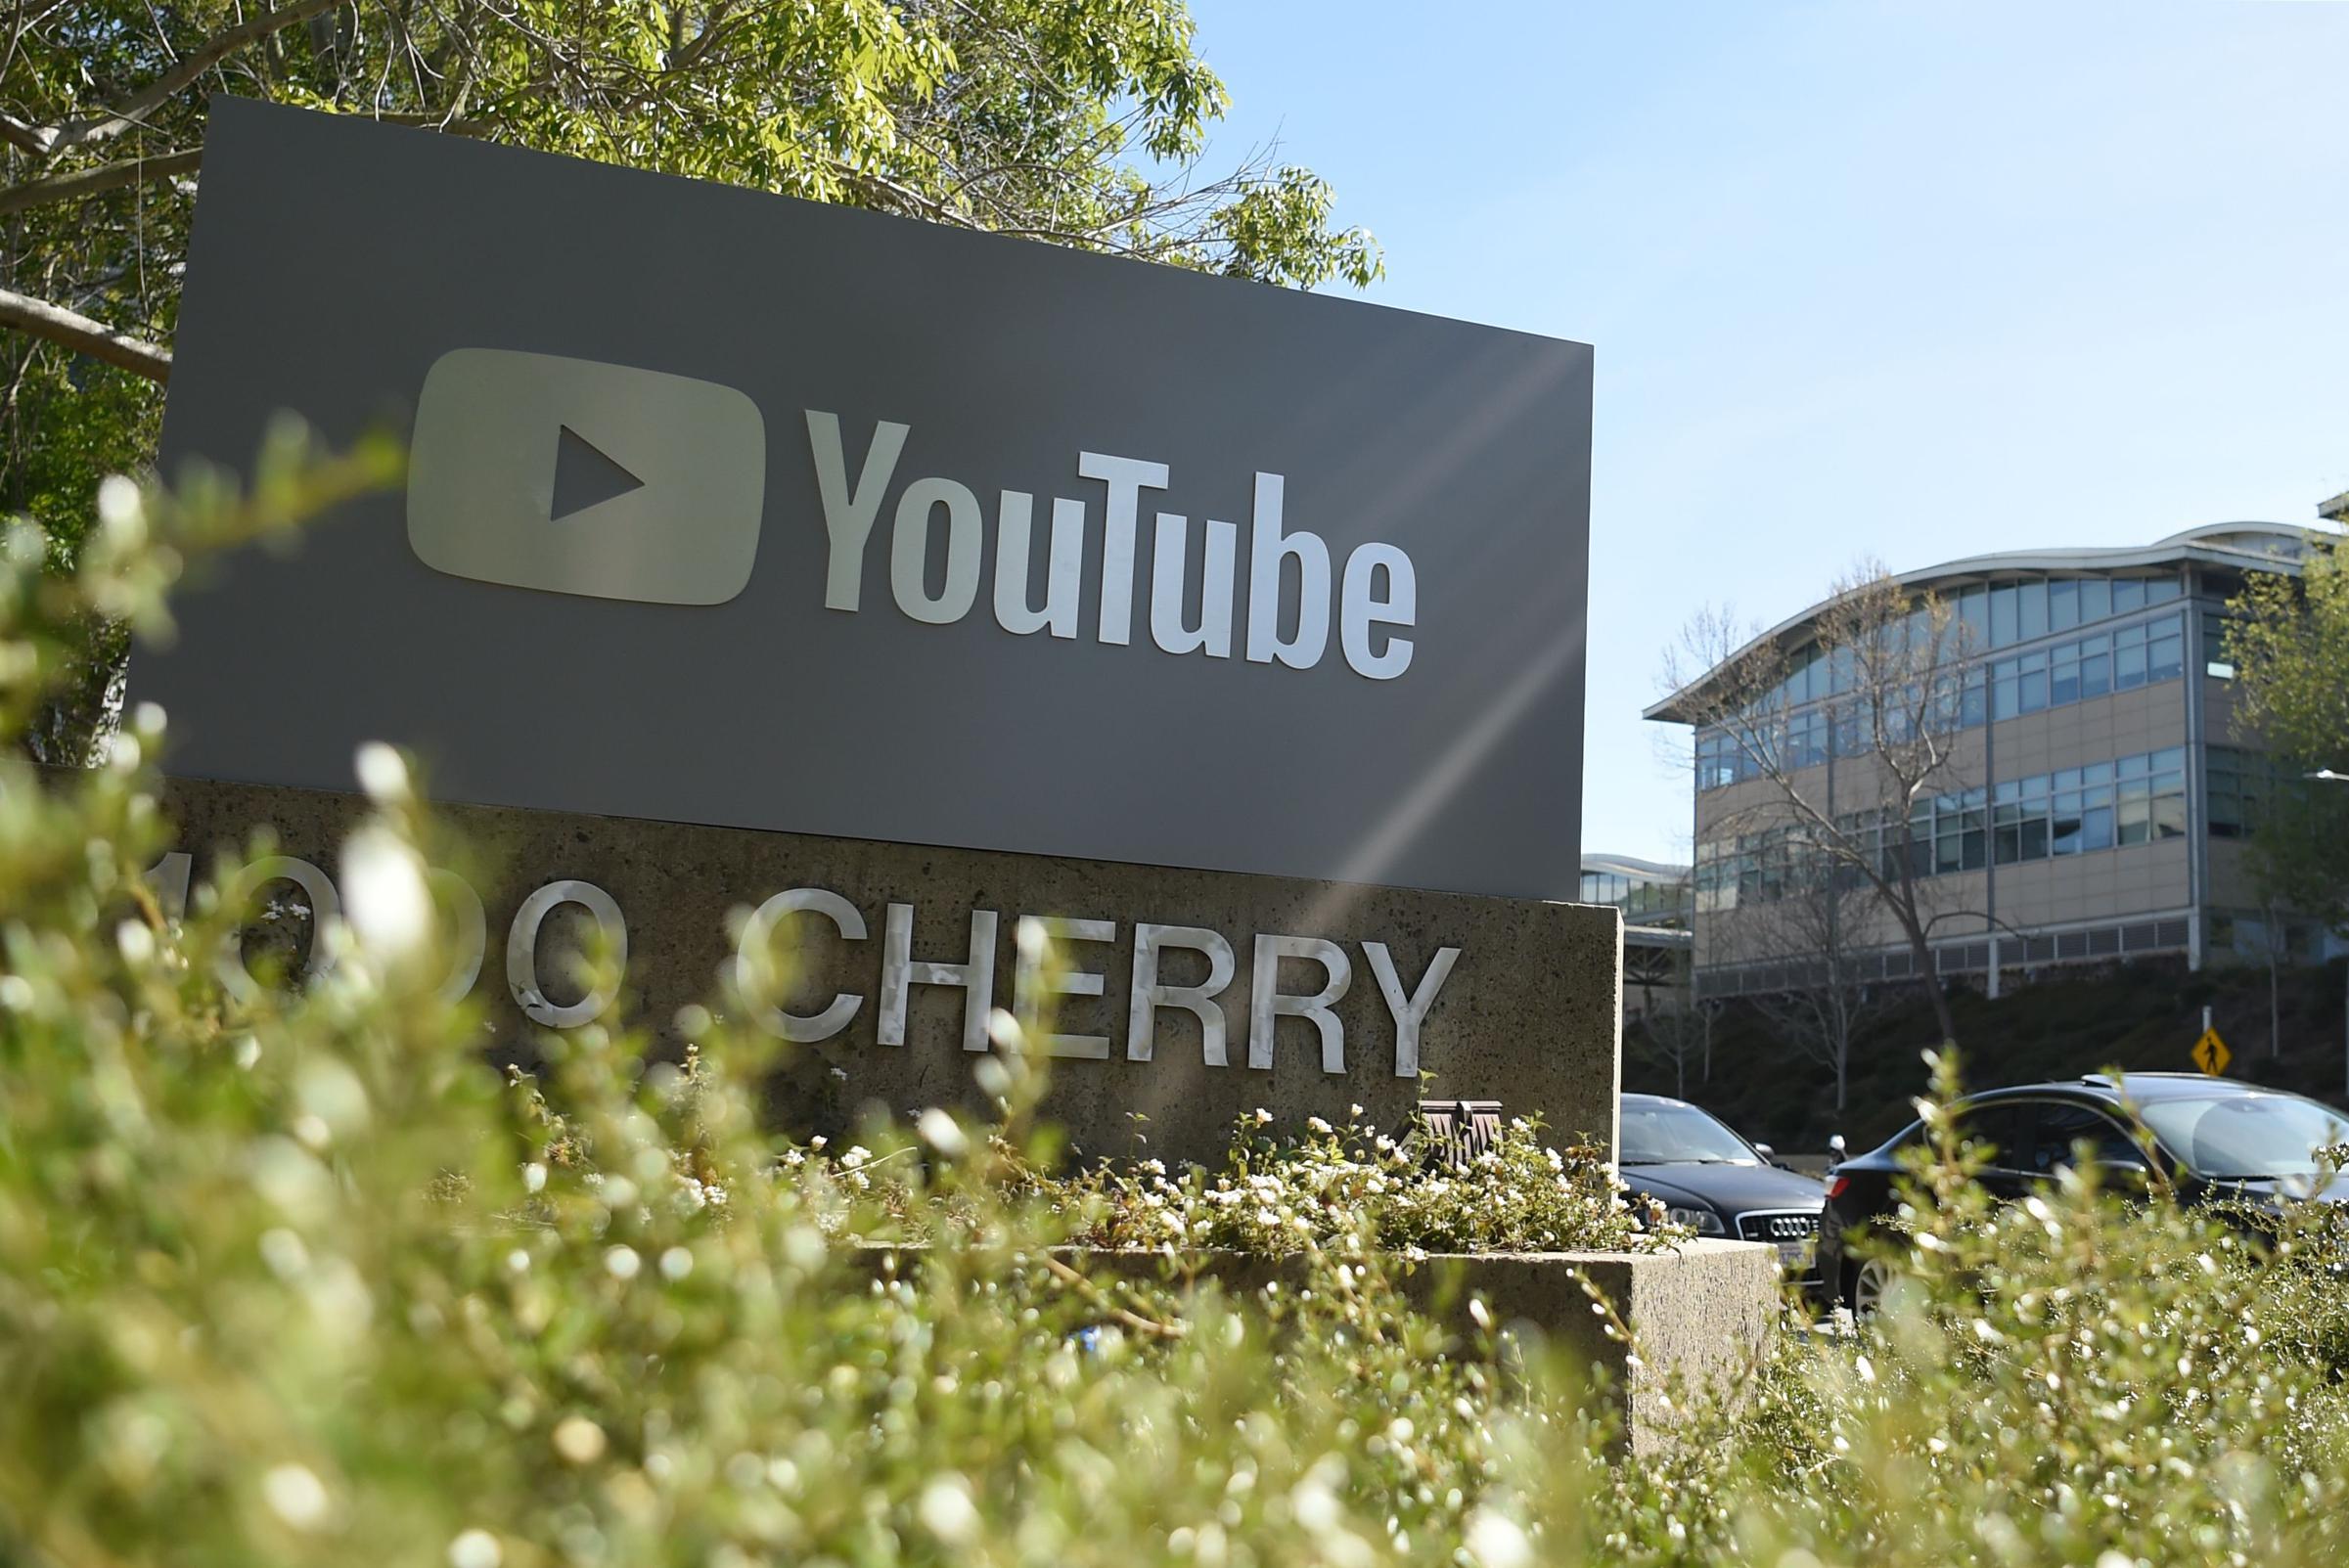 Google daha fazla işten çıkarma yapıyor: YouTube da 100 işten çıkarmadan etkilendi